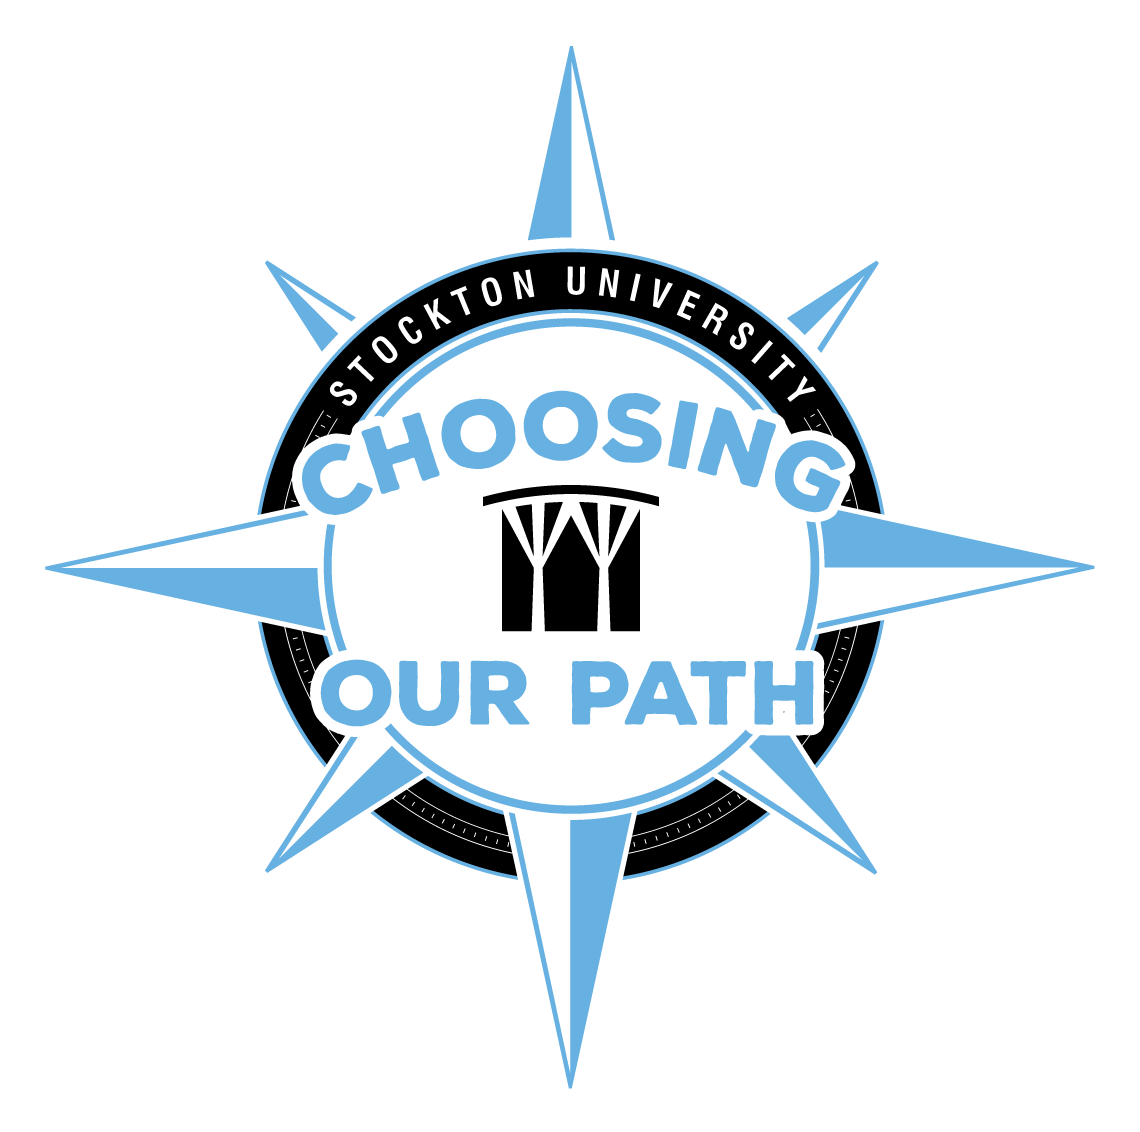 Choosing Our Path